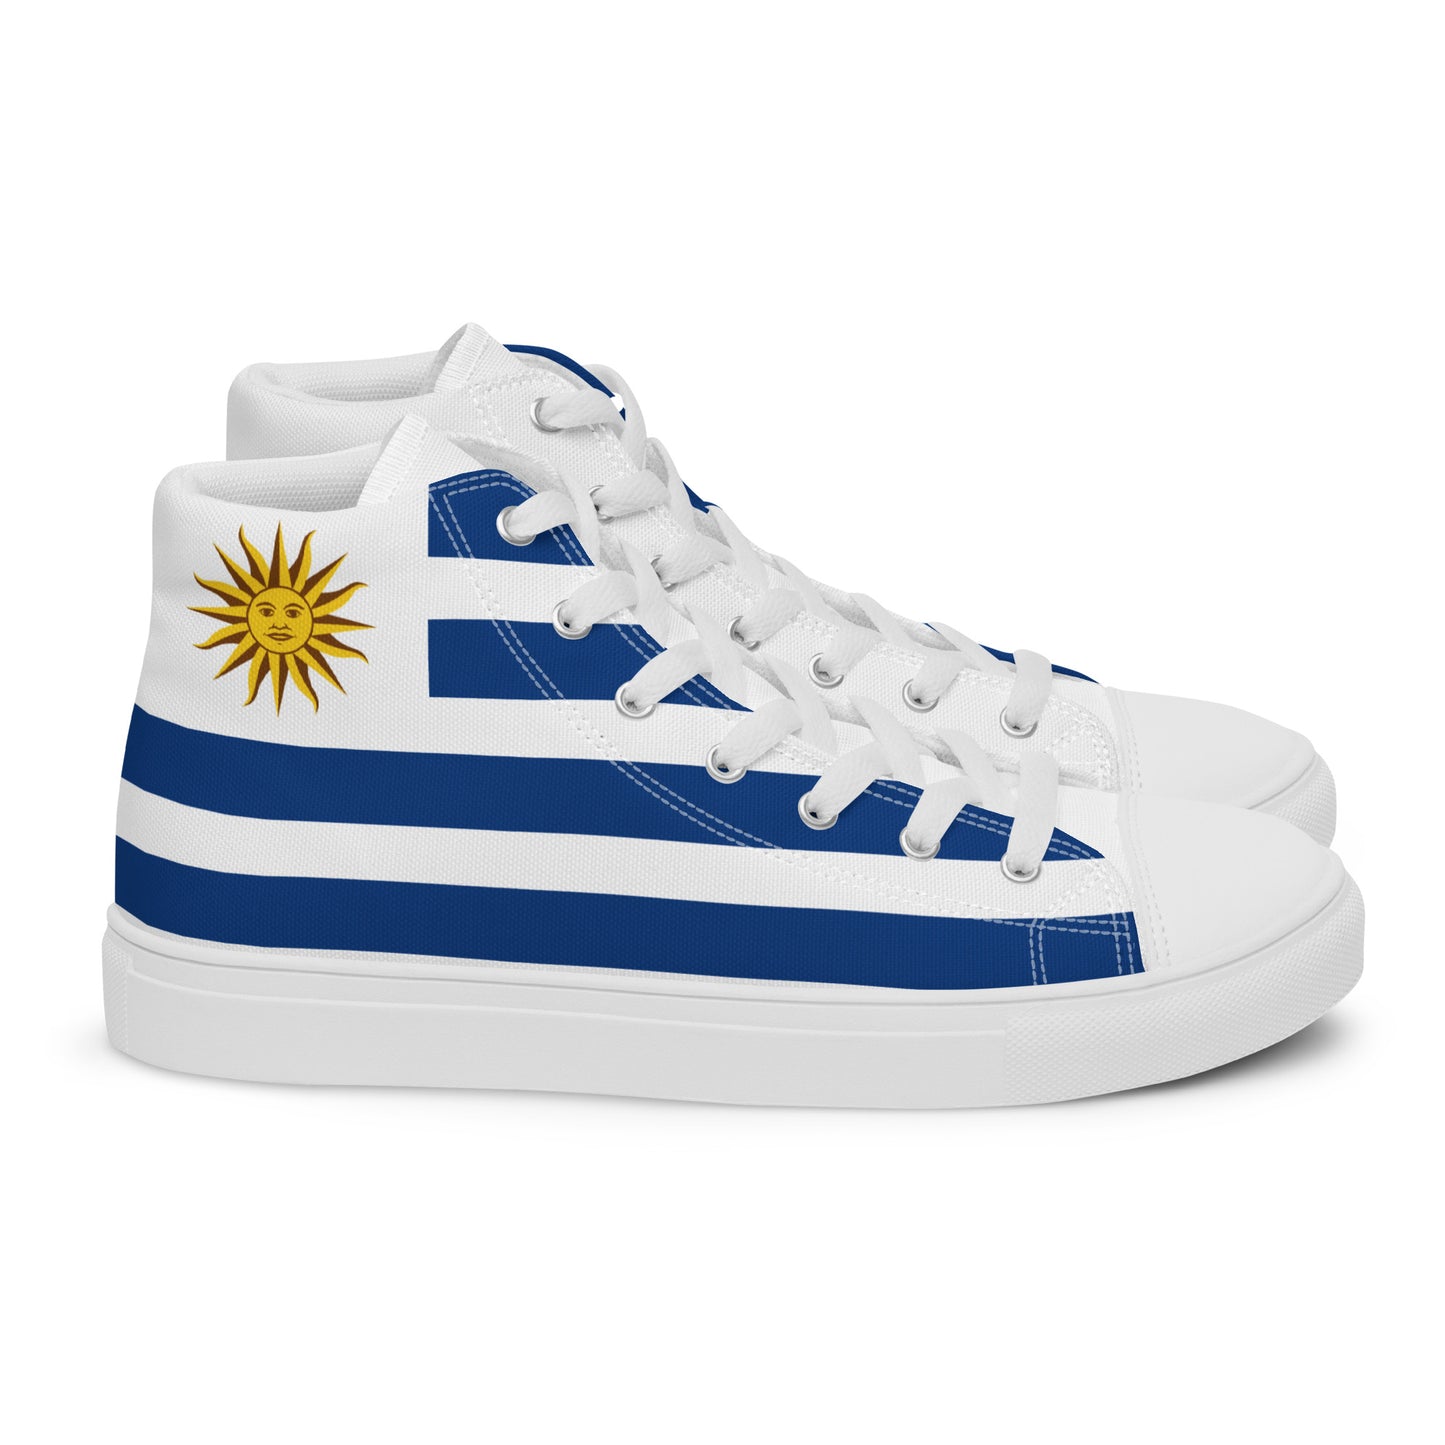 Uruguay - Men - Bandera - High top shoes